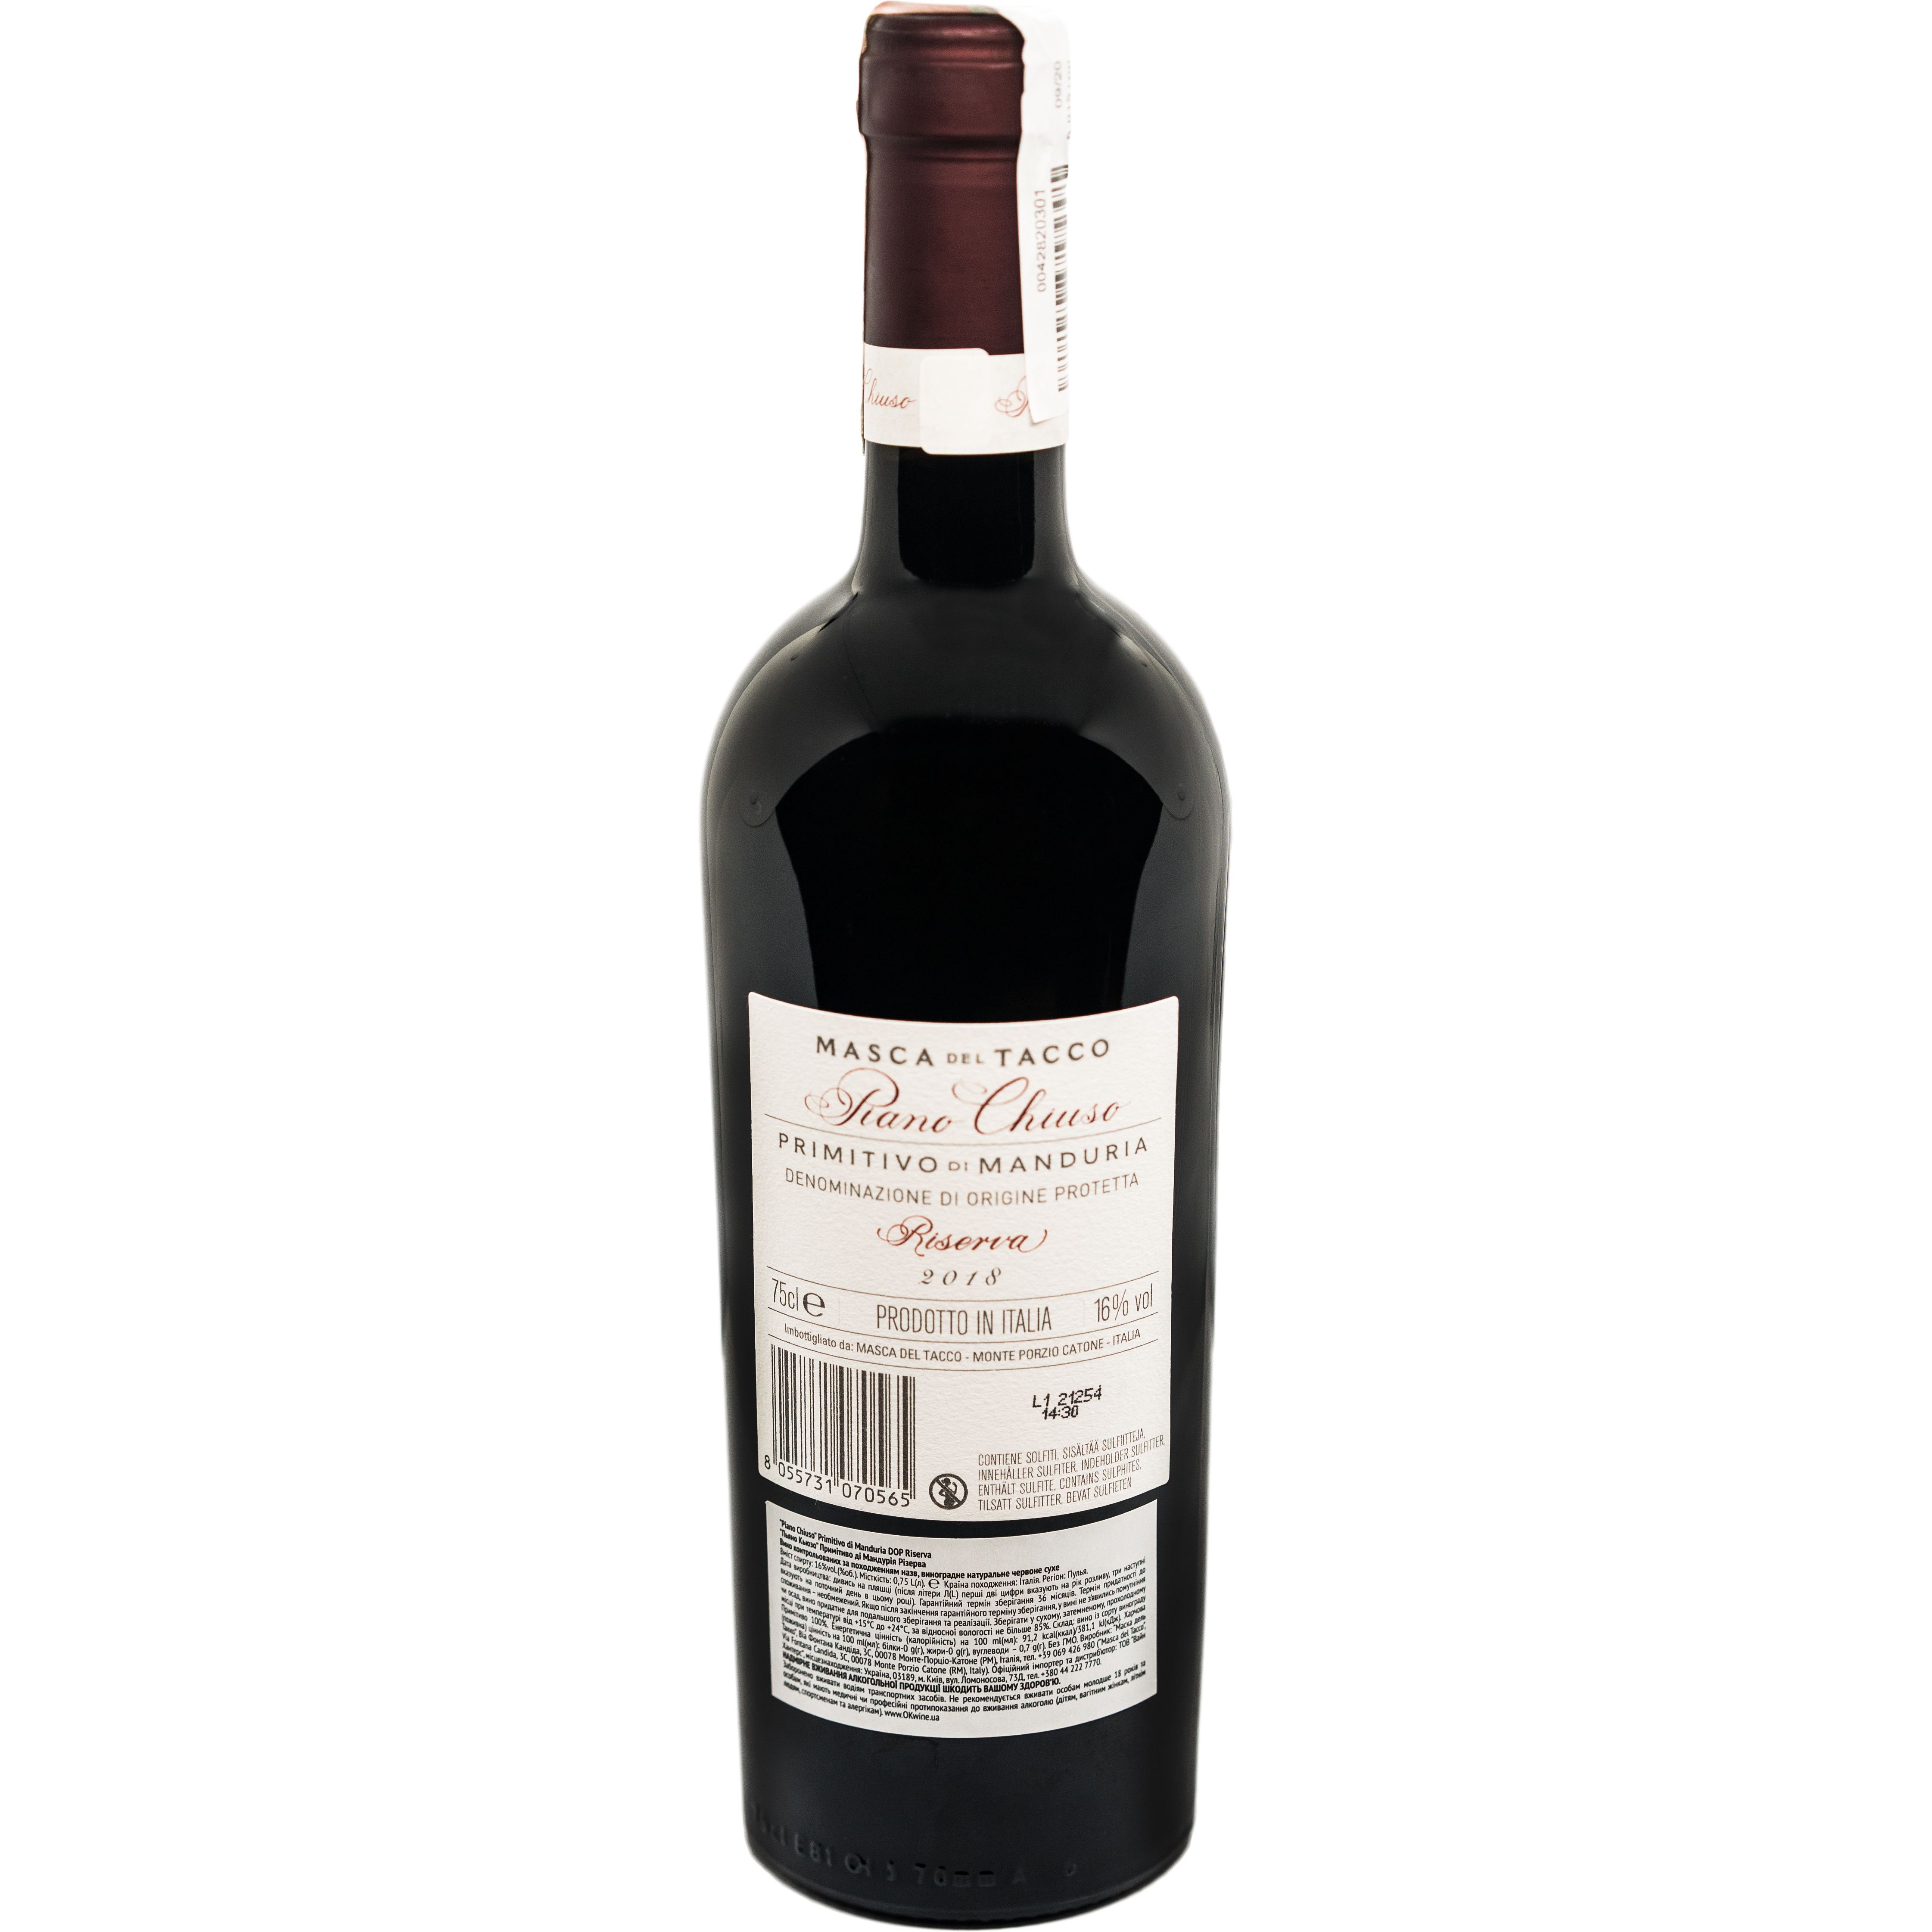 Вино Masca del Tacco Piano Chiuso Primitivo di Manduria DOP Riserva, красное, сухое, 0,75 л - фото 2